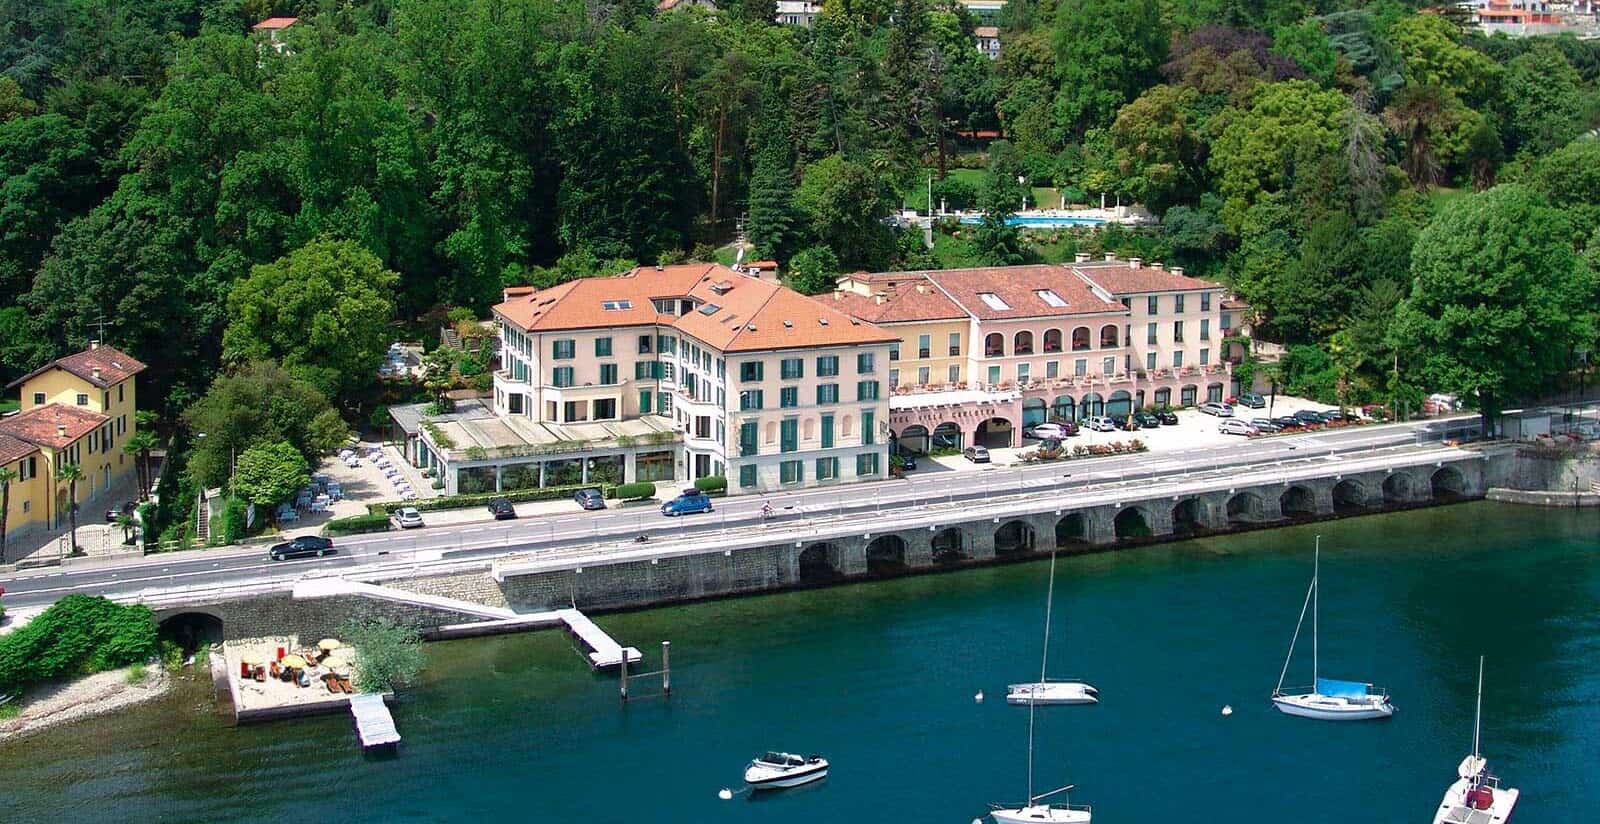 villa carlotta Hotel lago maggiore